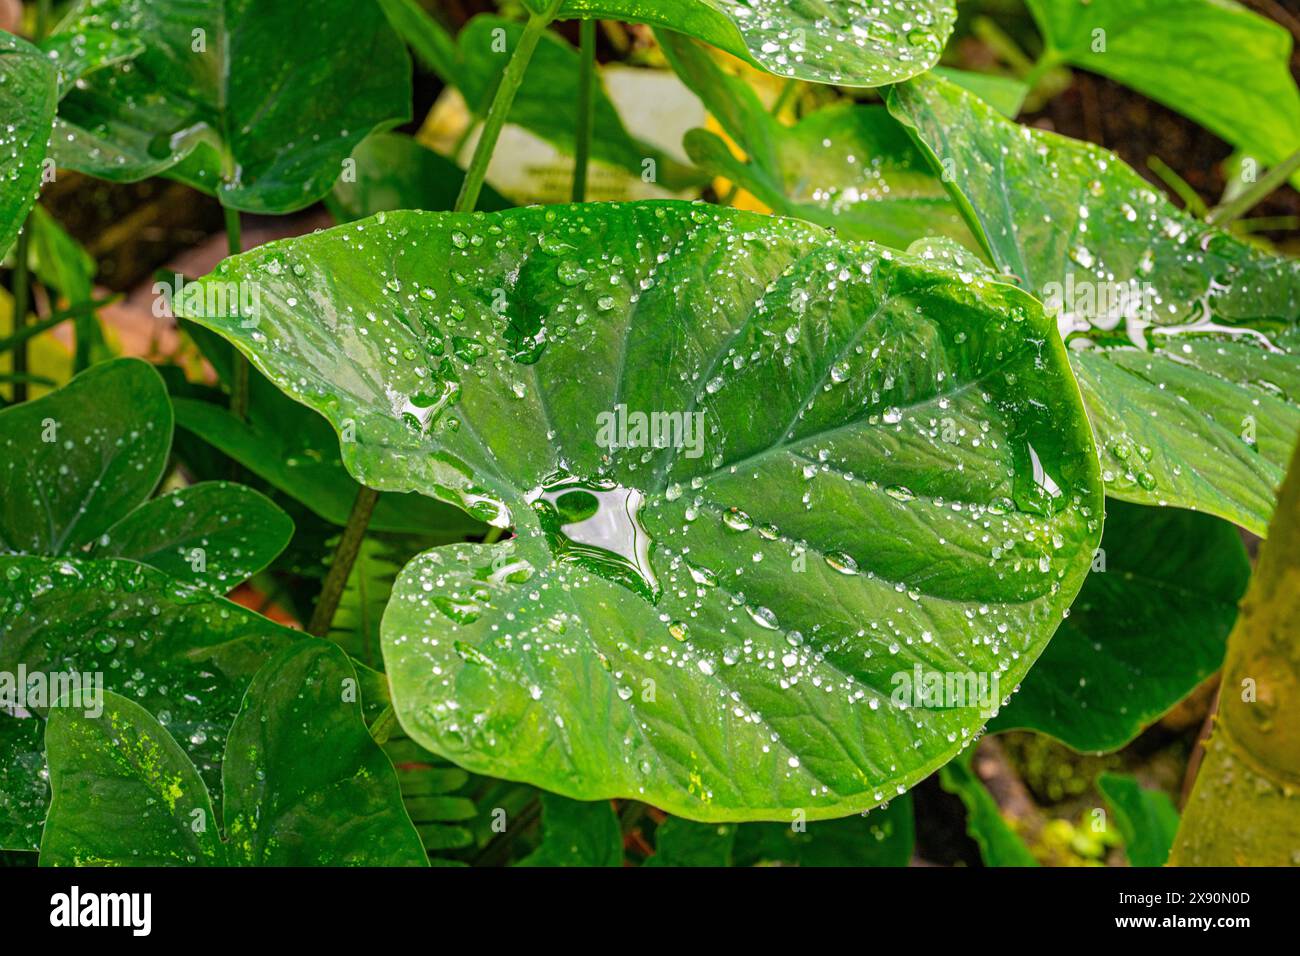 Der Lotuseffekt bei Taro, Coco Yam oder Eddoe (Colocasia esculenta) Blättern. Das Regenwasser rollt ab. Stockfoto